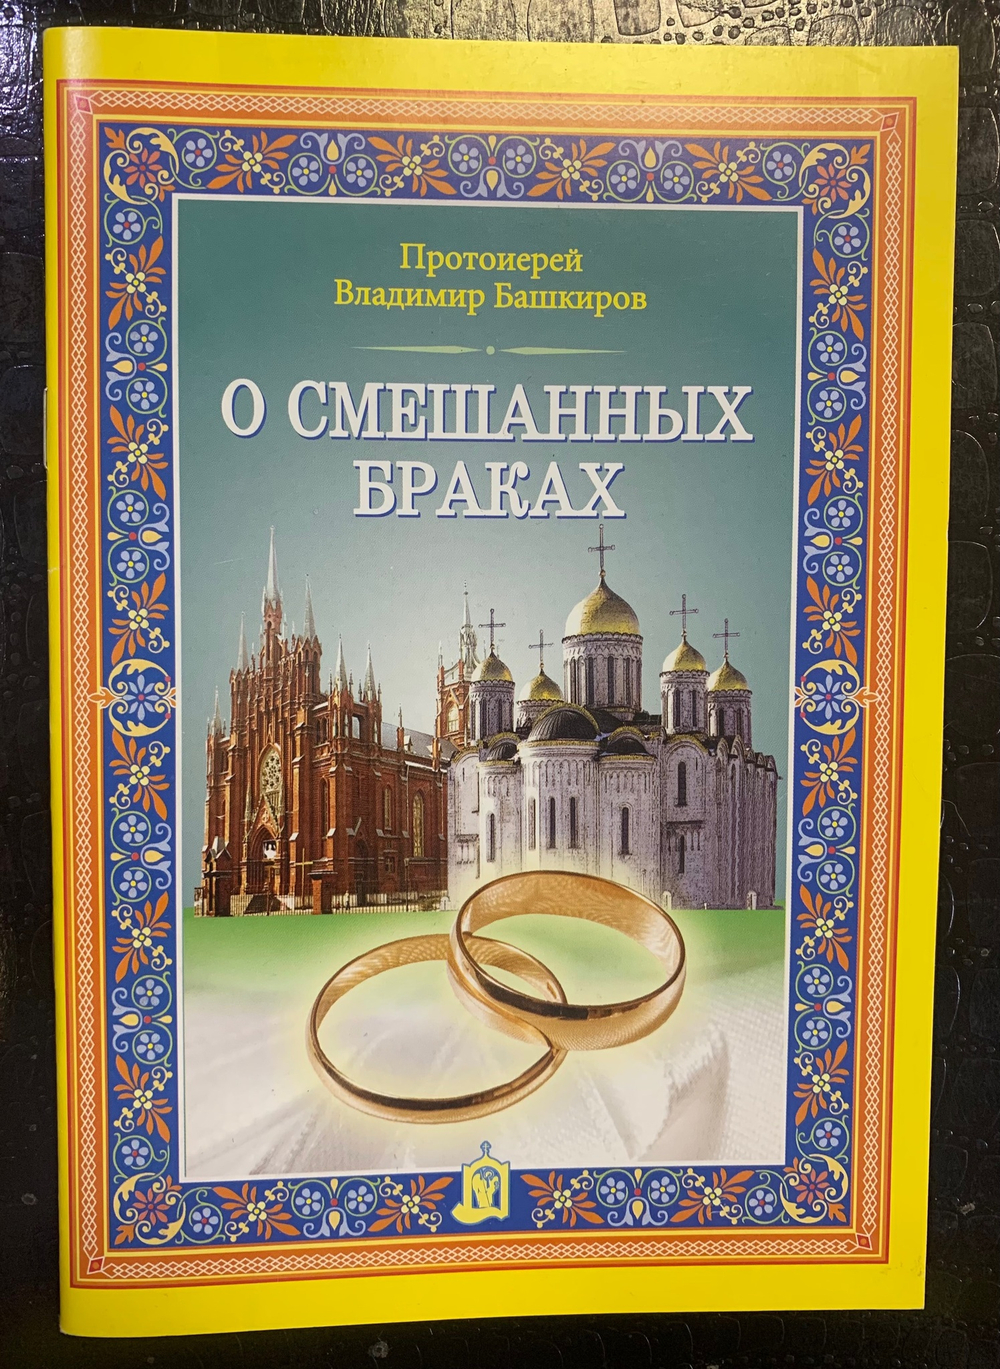 О смешанных браках. Протоиерей Владимир Башкиров